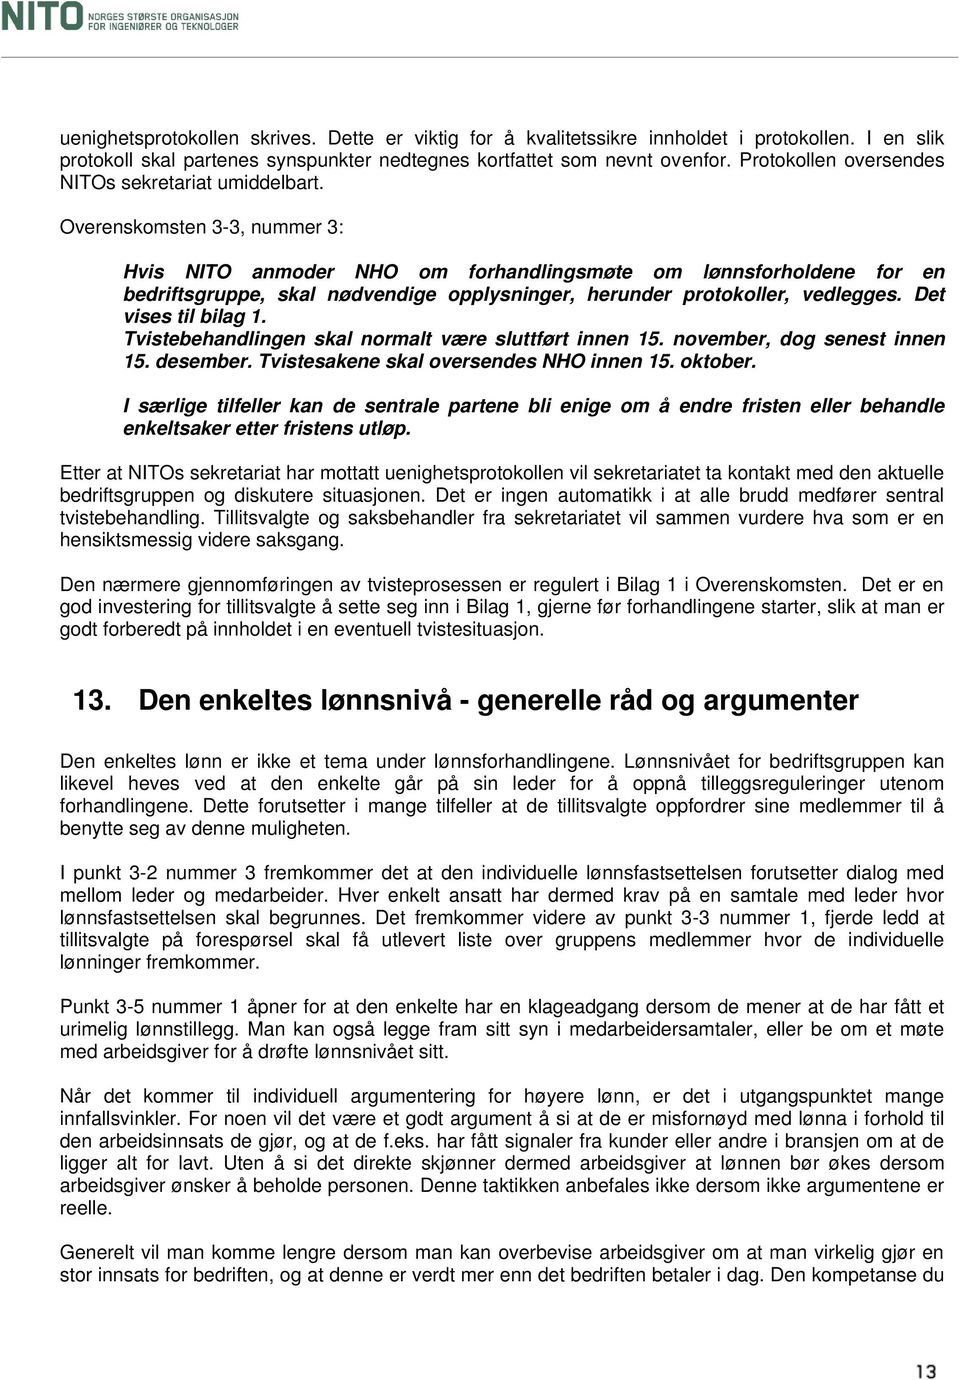 Overenskomsten 3-3, nummer 3: Hvis NITO anmoder NHO om forhandlingsmøte om lønnsforholdene for en bedriftsgruppe, skal nødvendige opplysninger, herunder protokoller, vedlegges. Det vises til bilag 1.